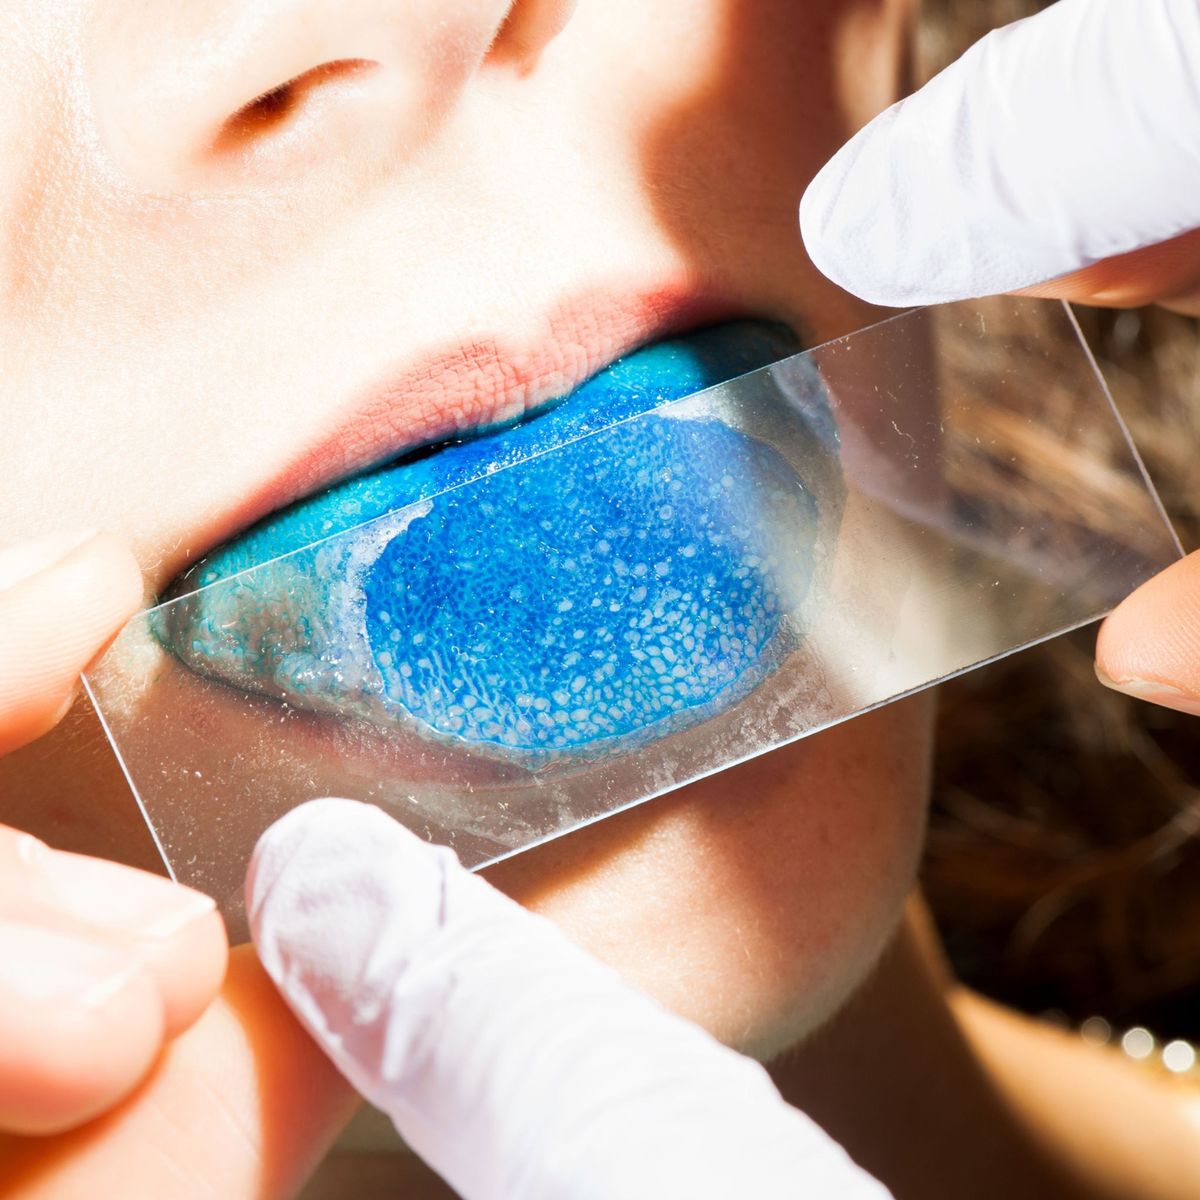 In de smaakpapillen op de tong  die met behulp van een blauwe voedingskleurstof als bleke puntjes op de tong zijn te zien  liggen smaakreceptoren verborgen